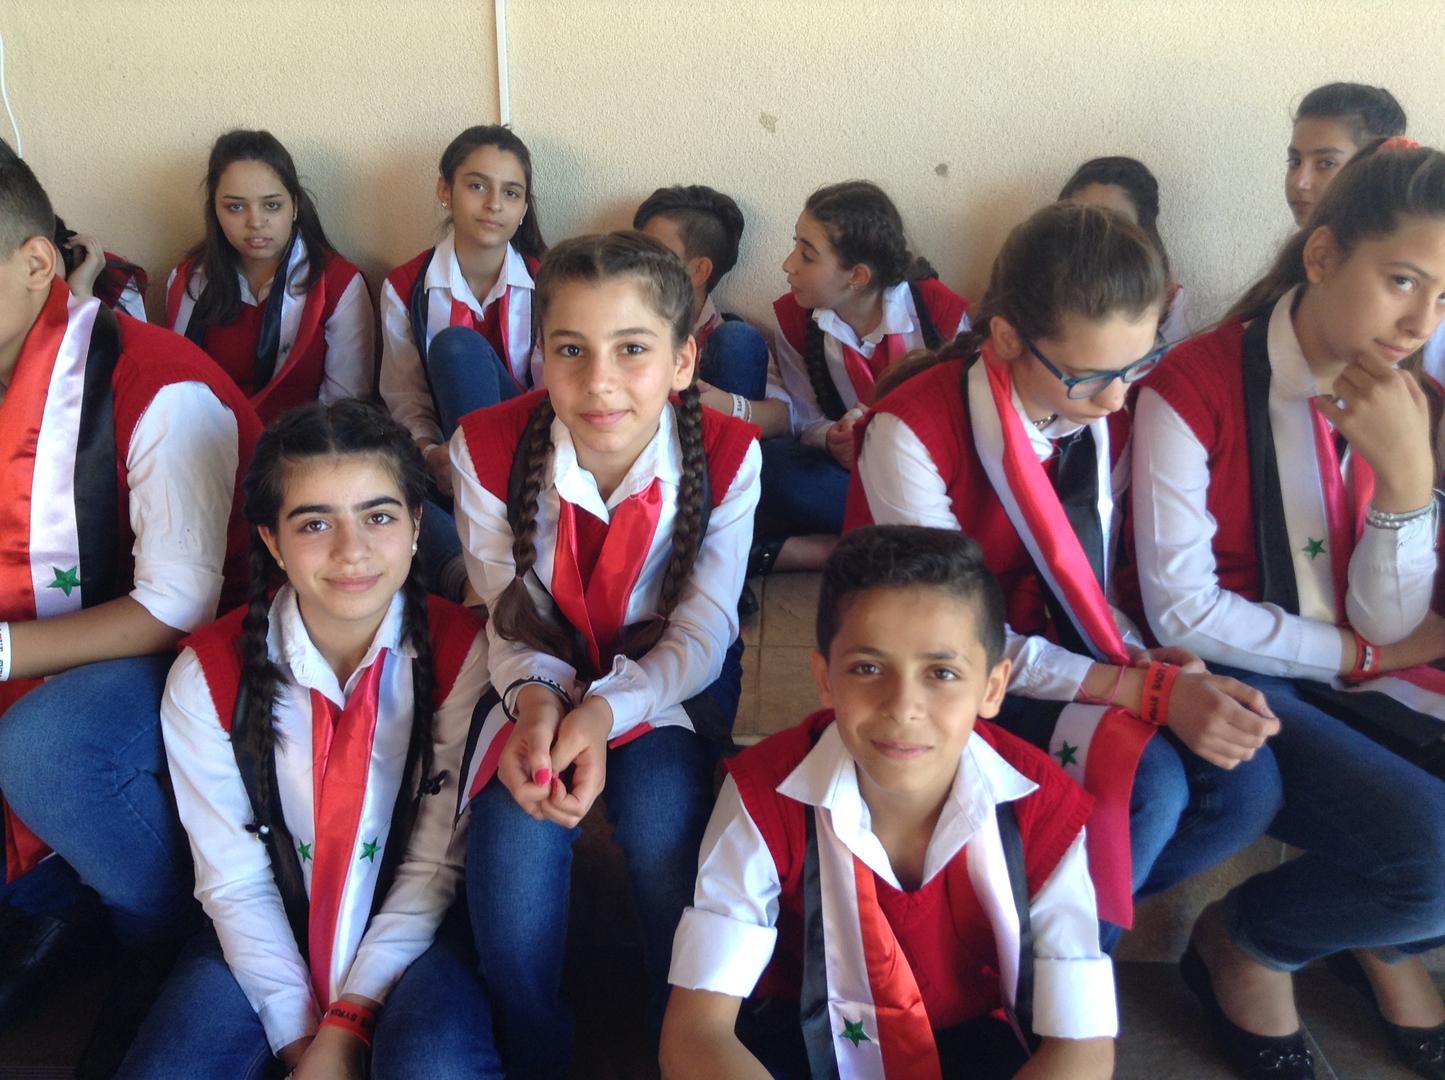 Djeca iz Sirije su prije povratka u domovinu svoje domaćine u Hrvatskoj razveselili priredbom, a ove su djevojčice pjevale u zboru